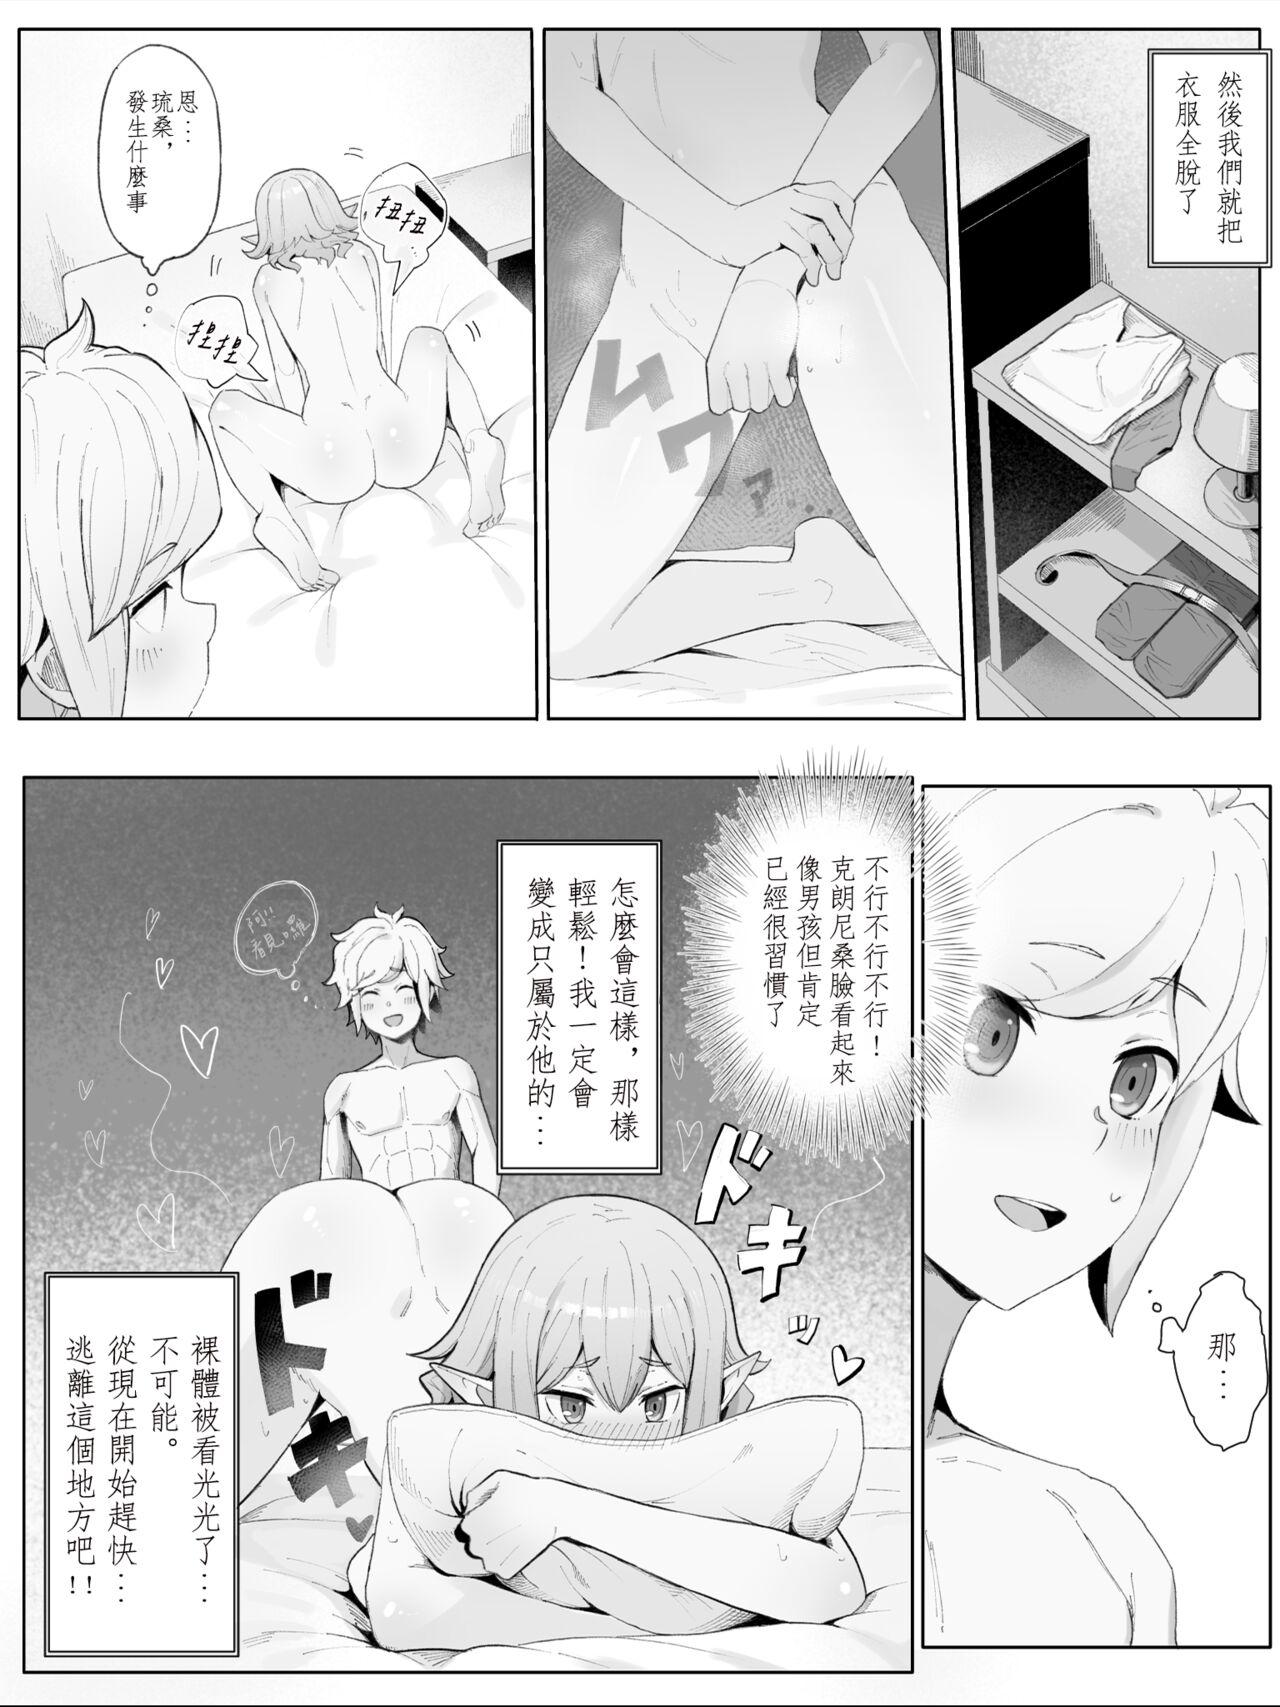 Fleshlight Bell Ryuu Ecchi na Manga - Dungeon ni deai o motomeru no wa machigatteiru darou ka Pmv - Page 9